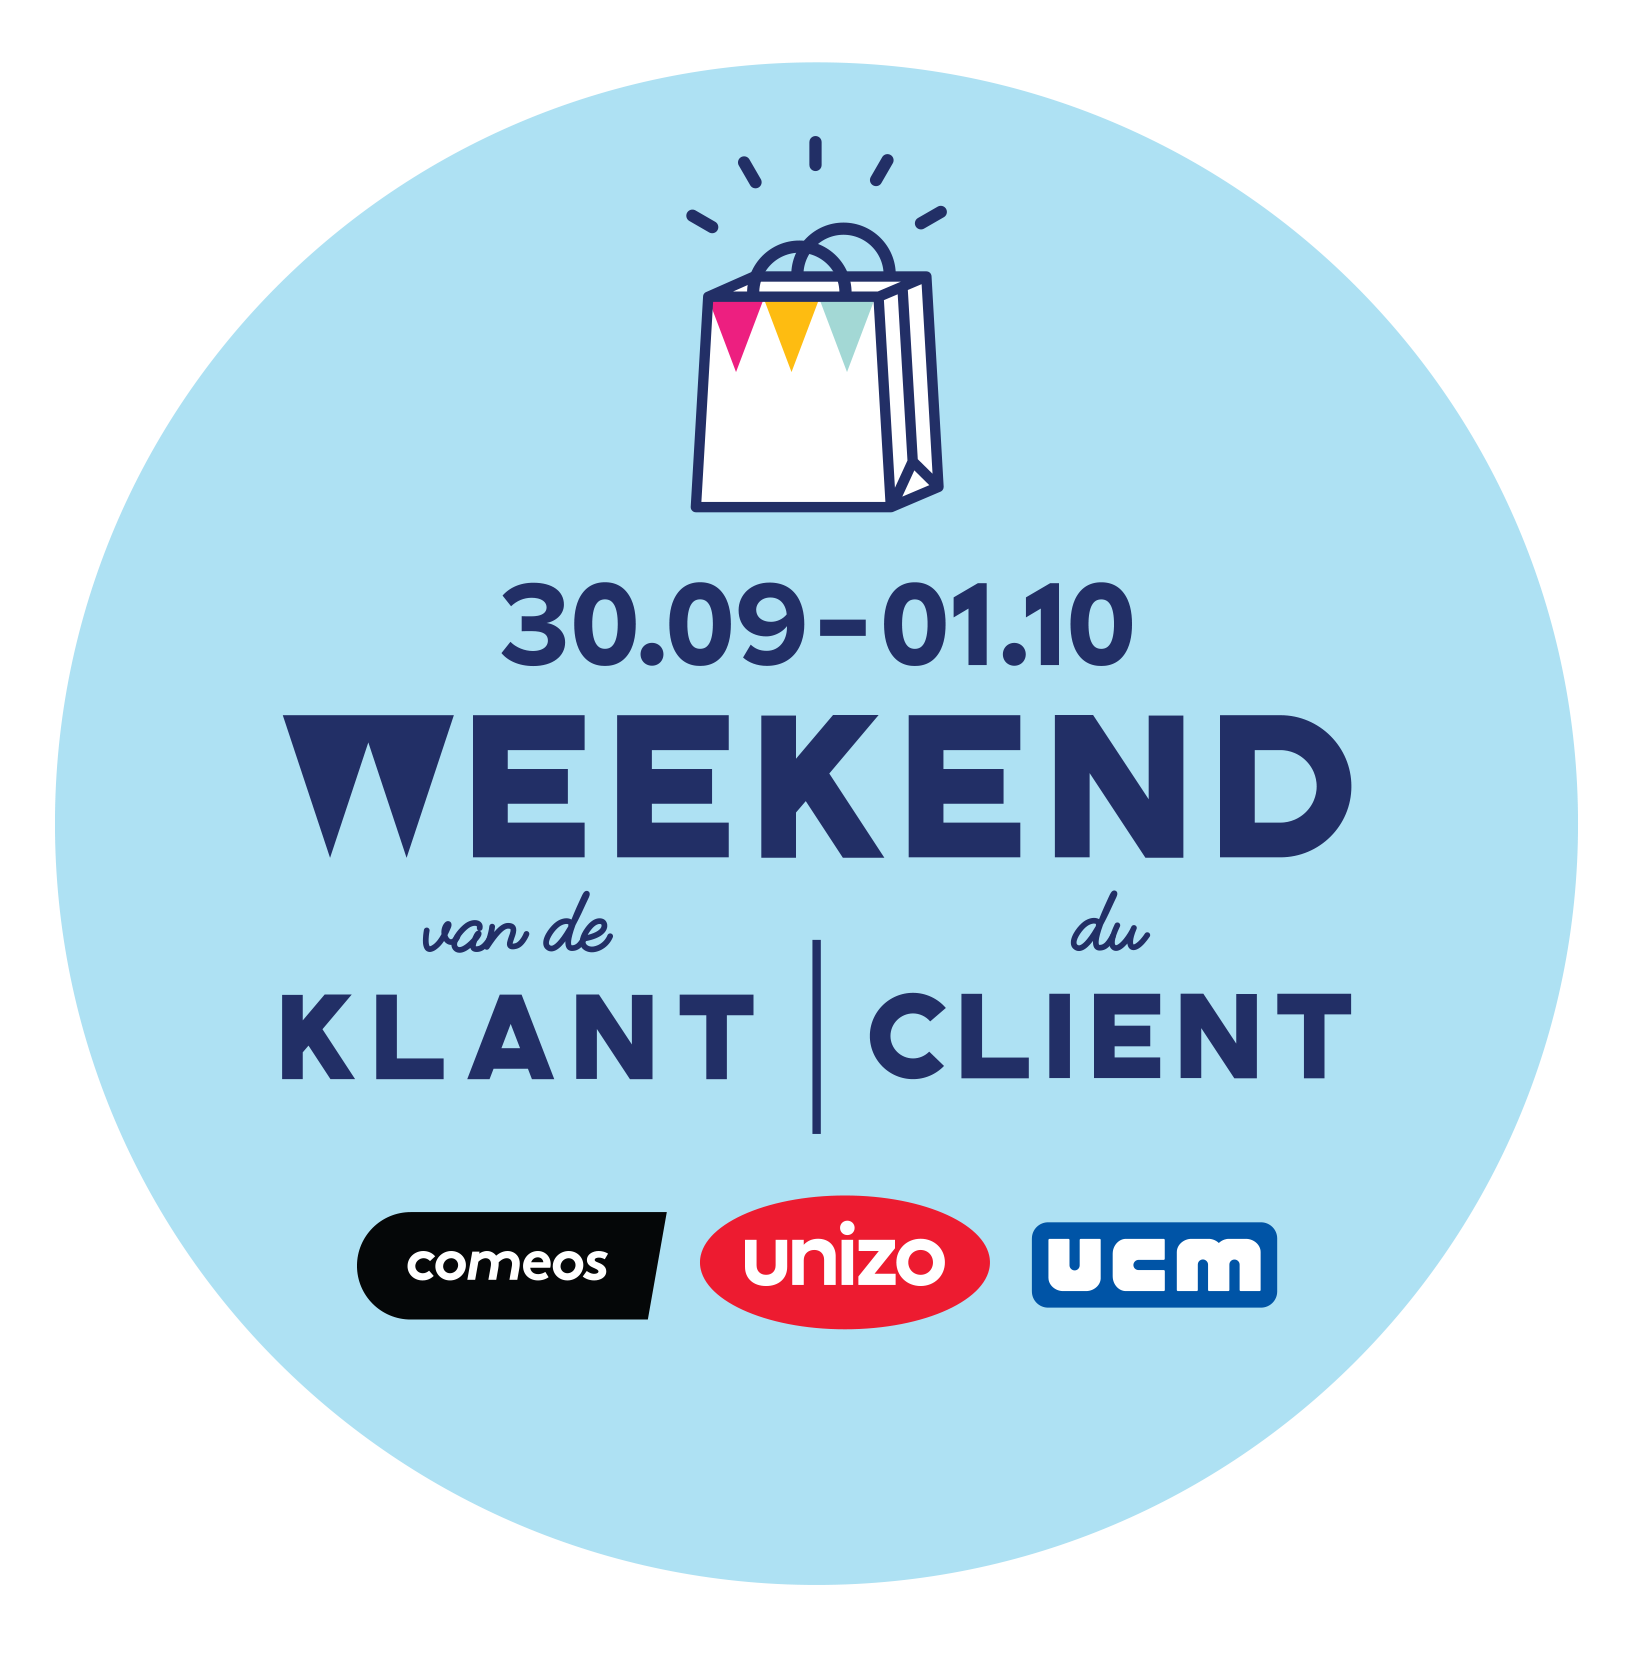 Logo Weekend van de Klant - Weekend du Client